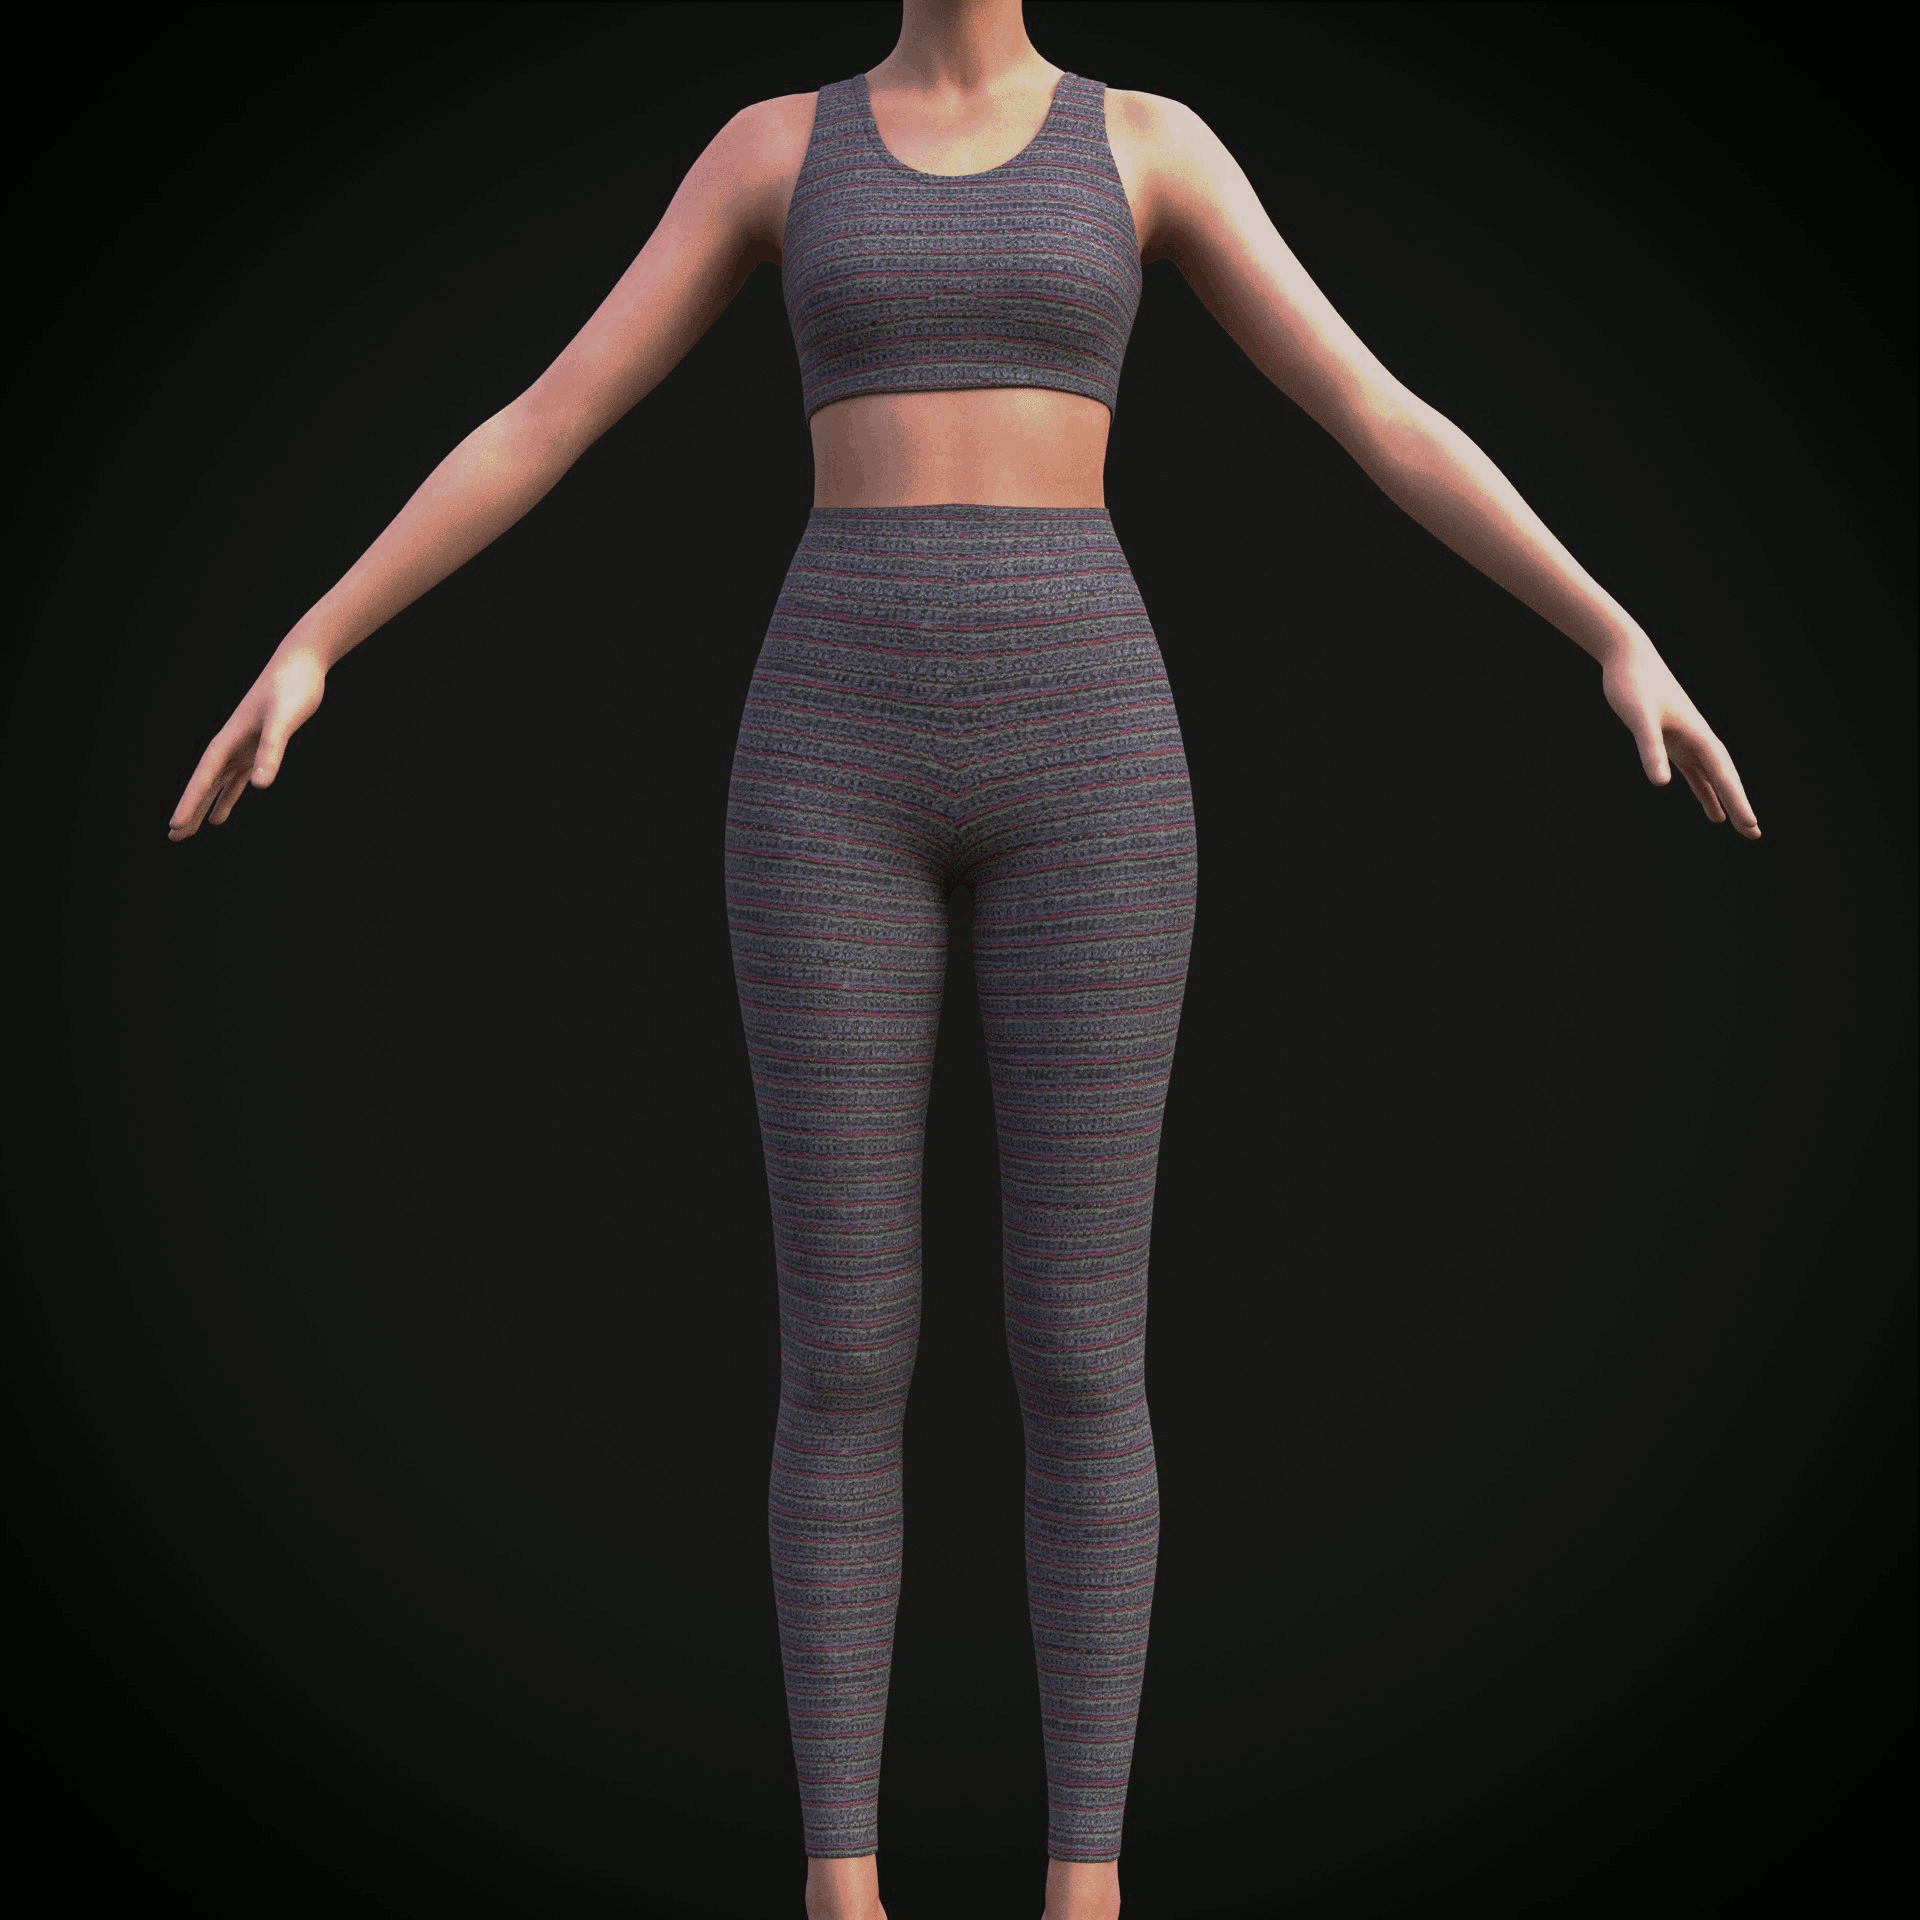 ArtStation - Female sport wear - 3D clothing